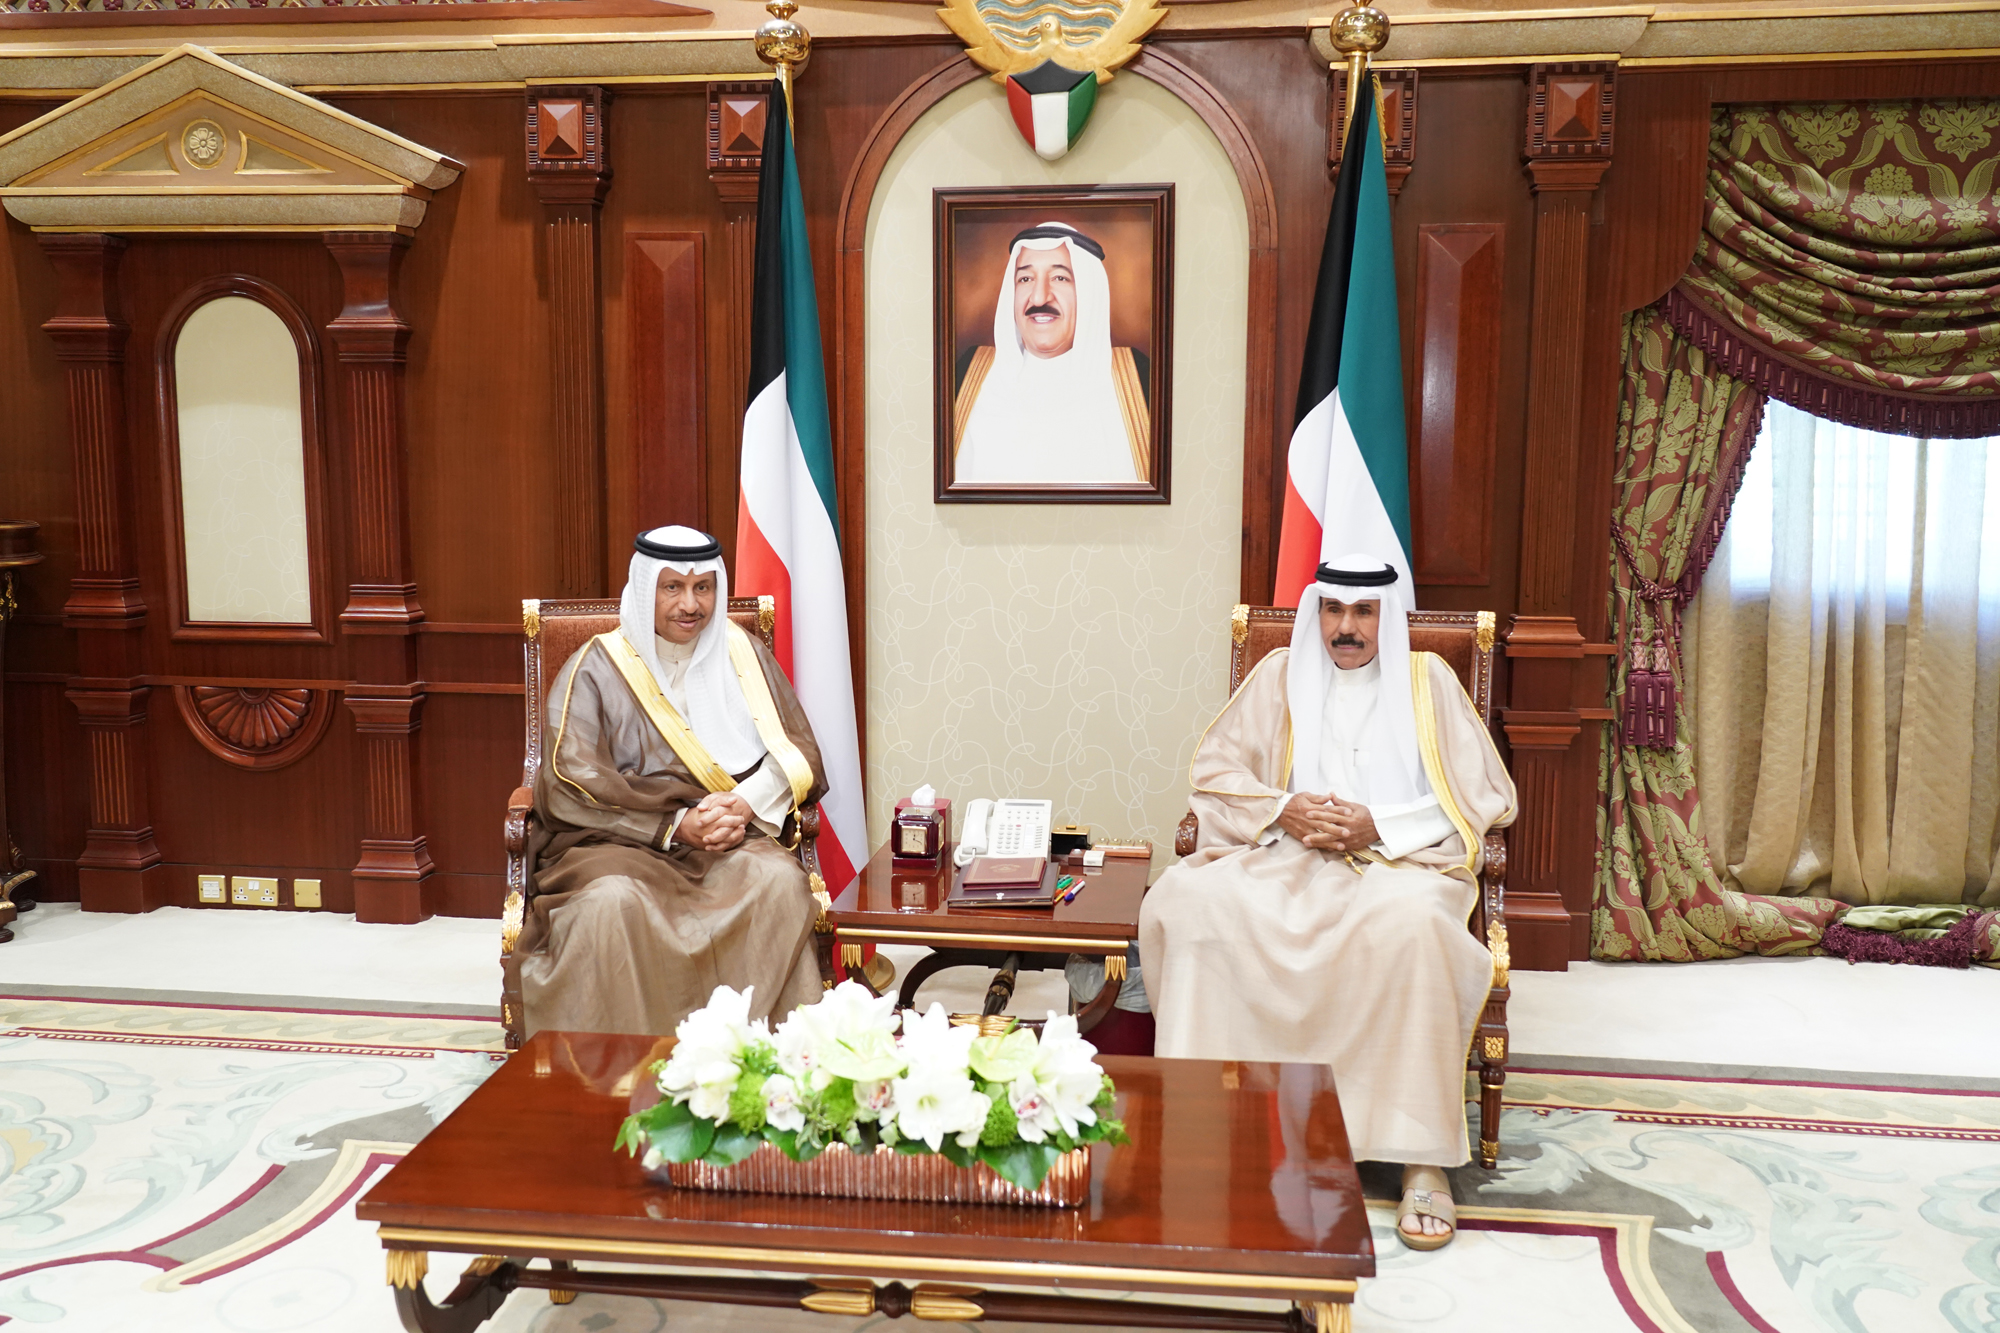 the Crown Prince received the Prime Minister Sheikh Jaber Al-Mubarak Al-Hamad Al-Sabah